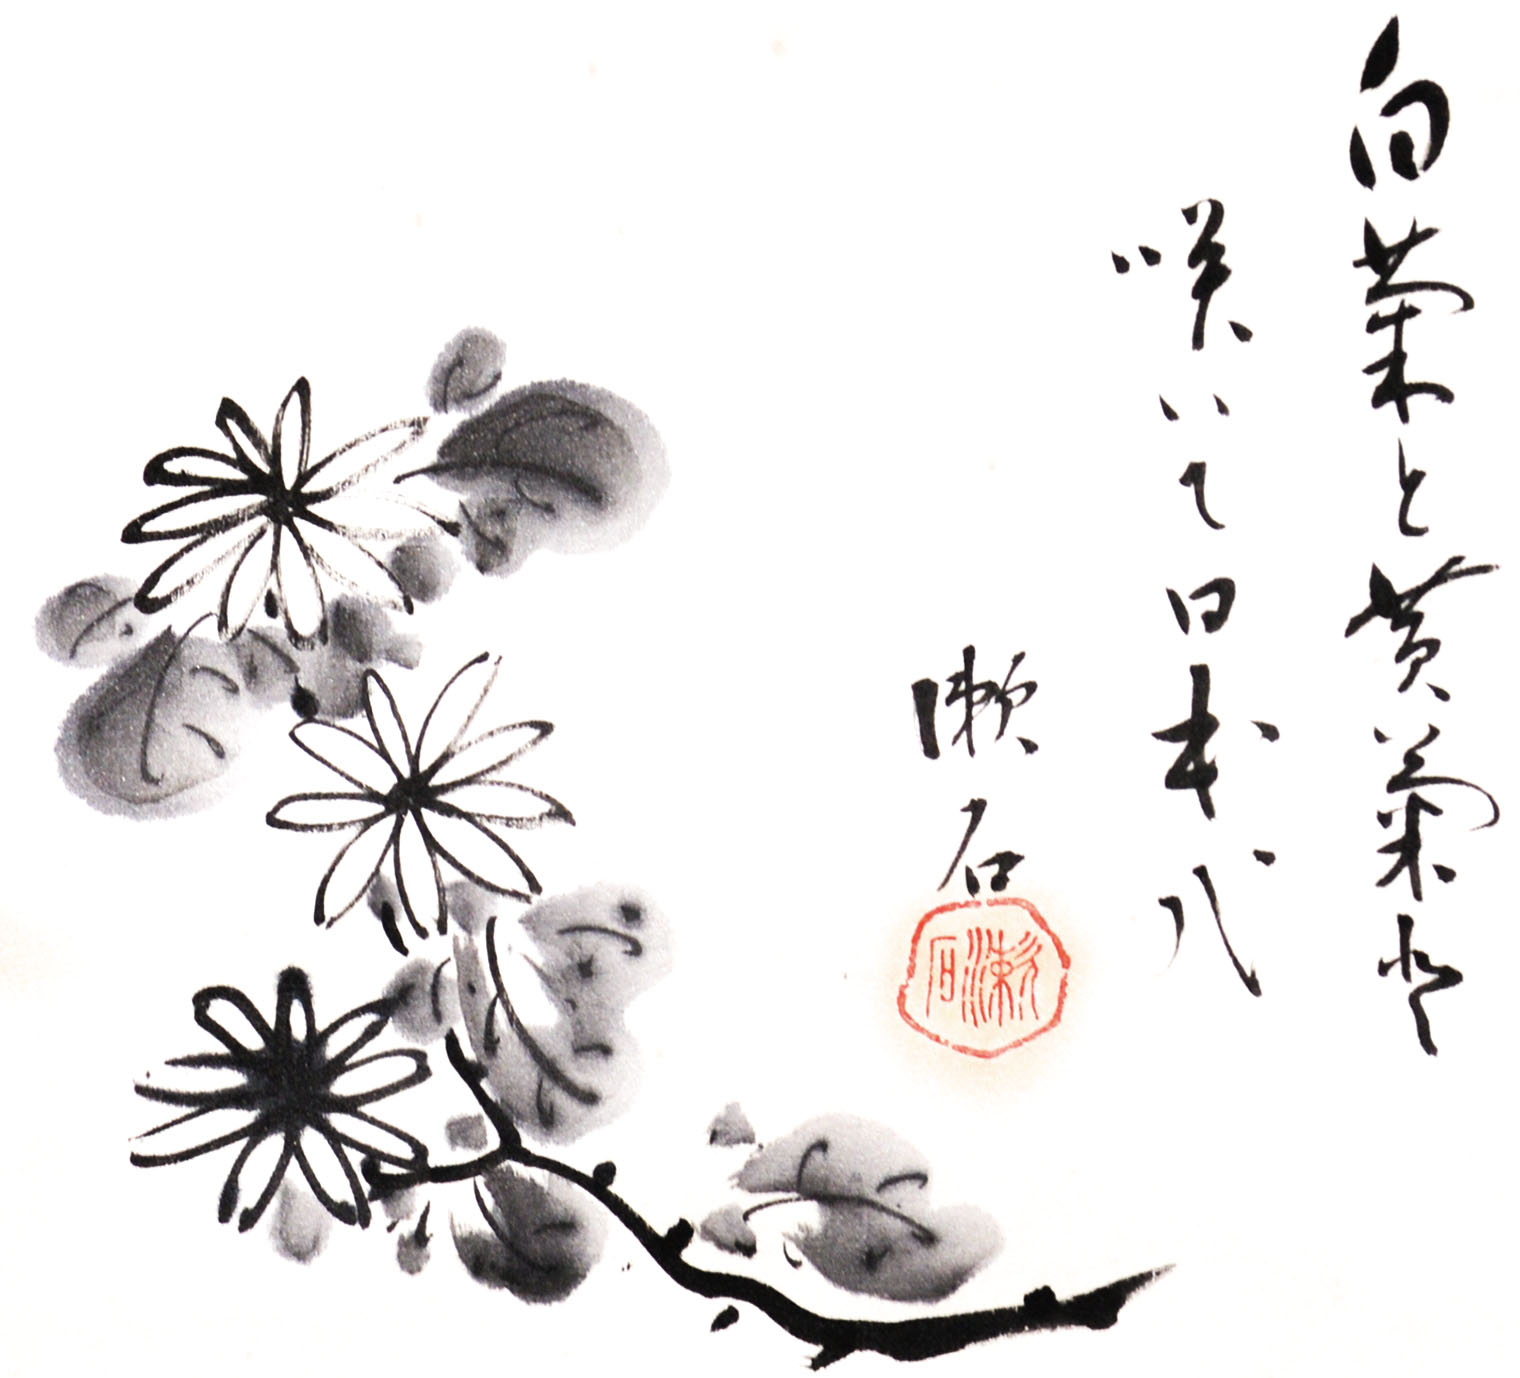 画像: 夏目漱石画賛幅「白菊と」